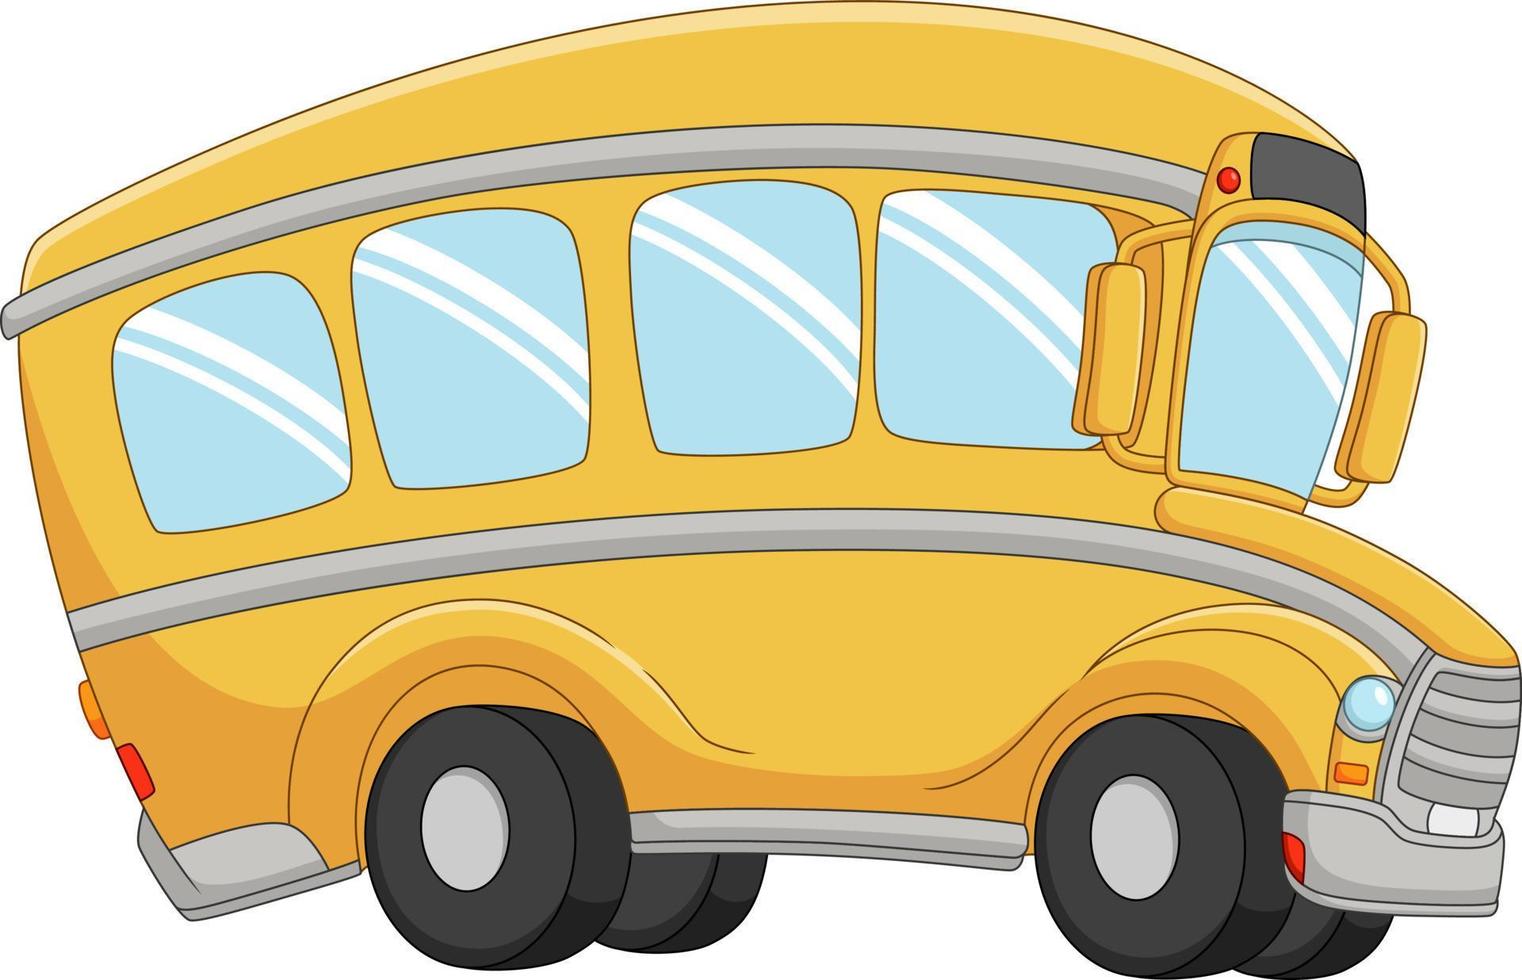 gelber bus der karikatur auf weißem hintergrund vektor